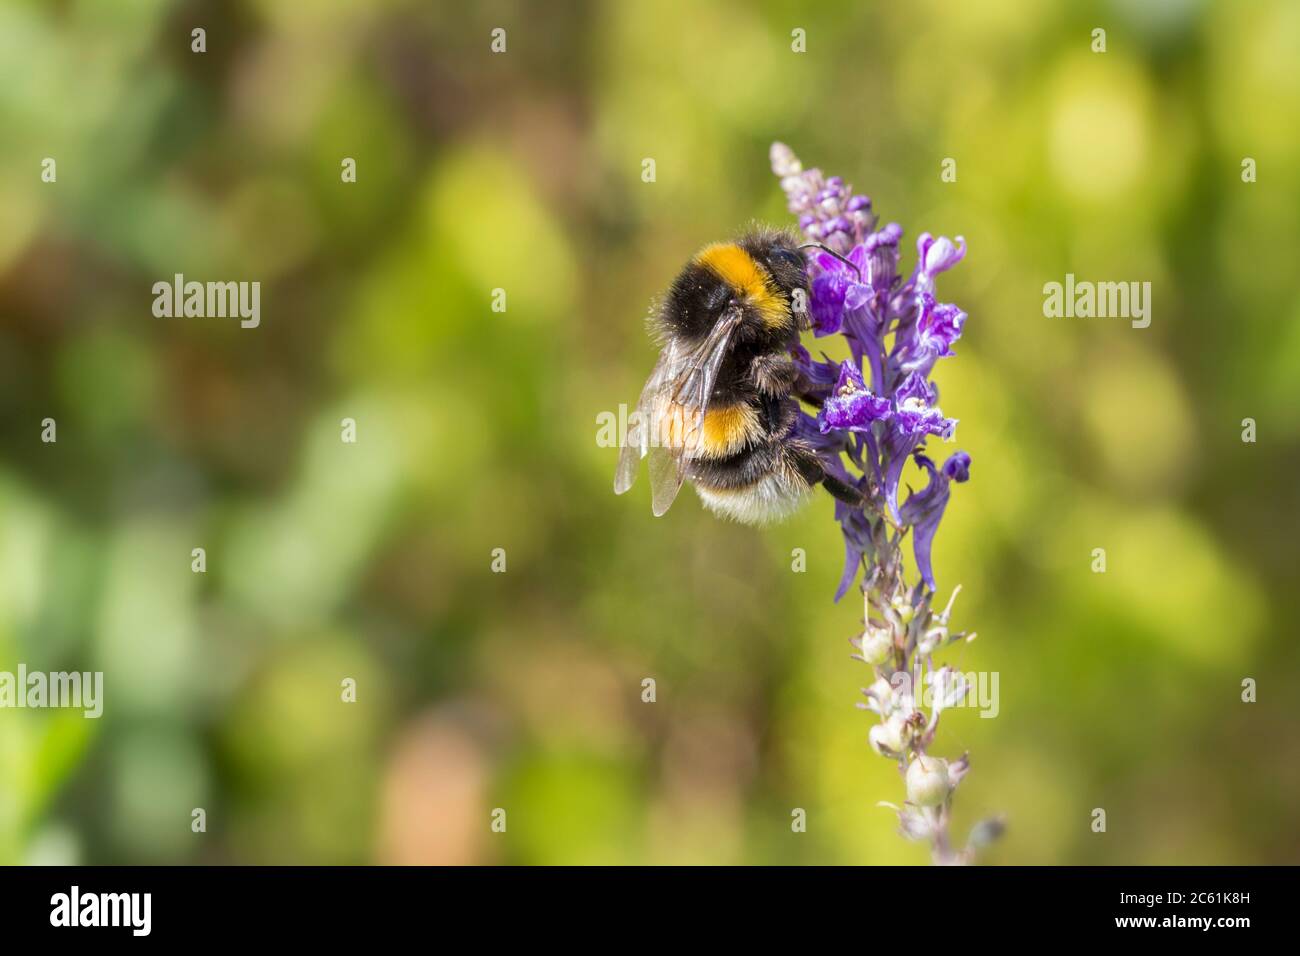 Buff Schwanz Bumble Biene auf lila Blume (Bombus terrestris) Buff Spitze des Abdomens gelbes Band auf Bauch und Vorderseite des Thorax sonst schwarz. Stockfoto